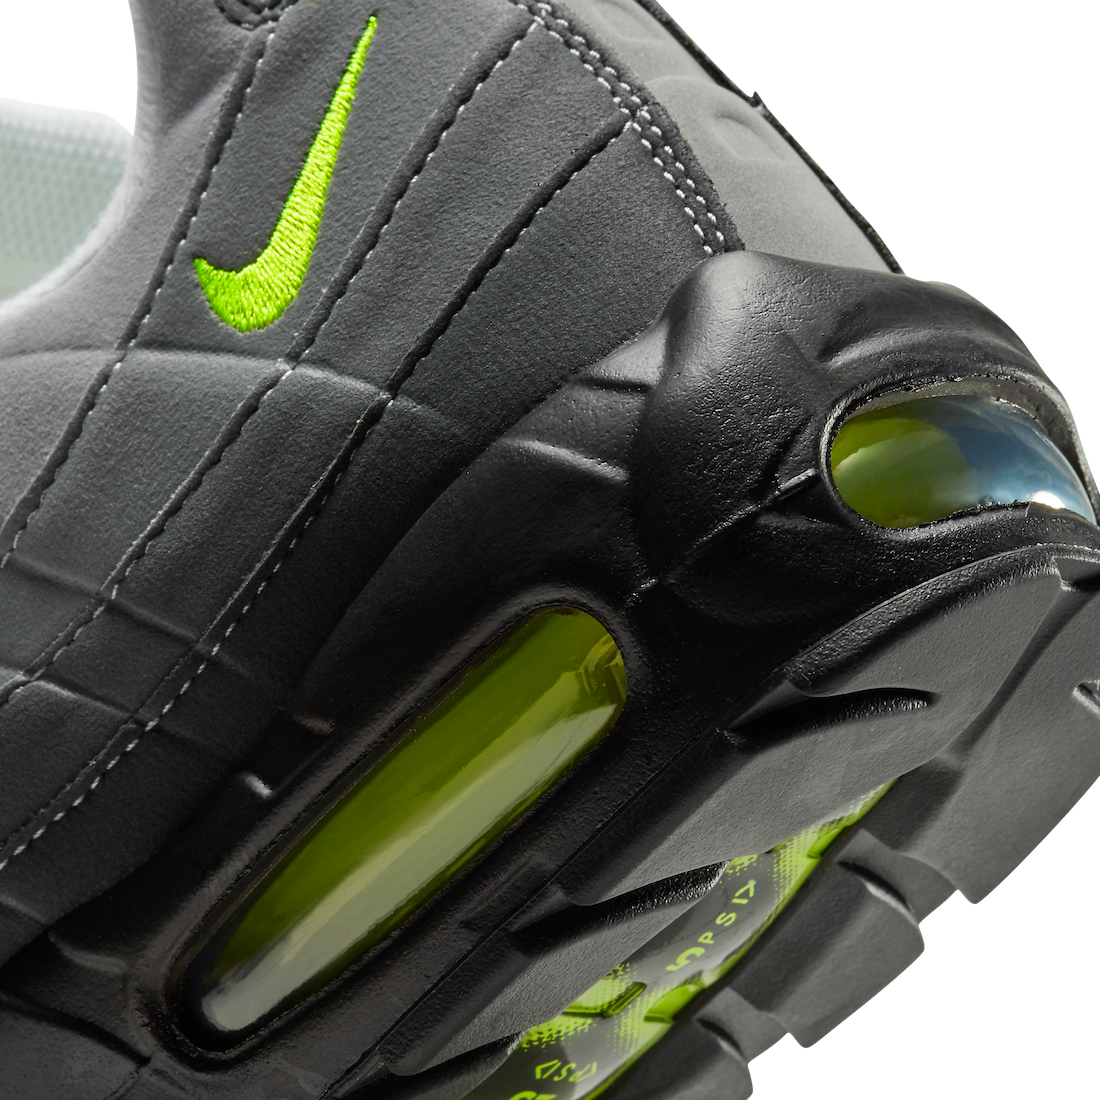 Nike Air Max 95 “OG Neon”